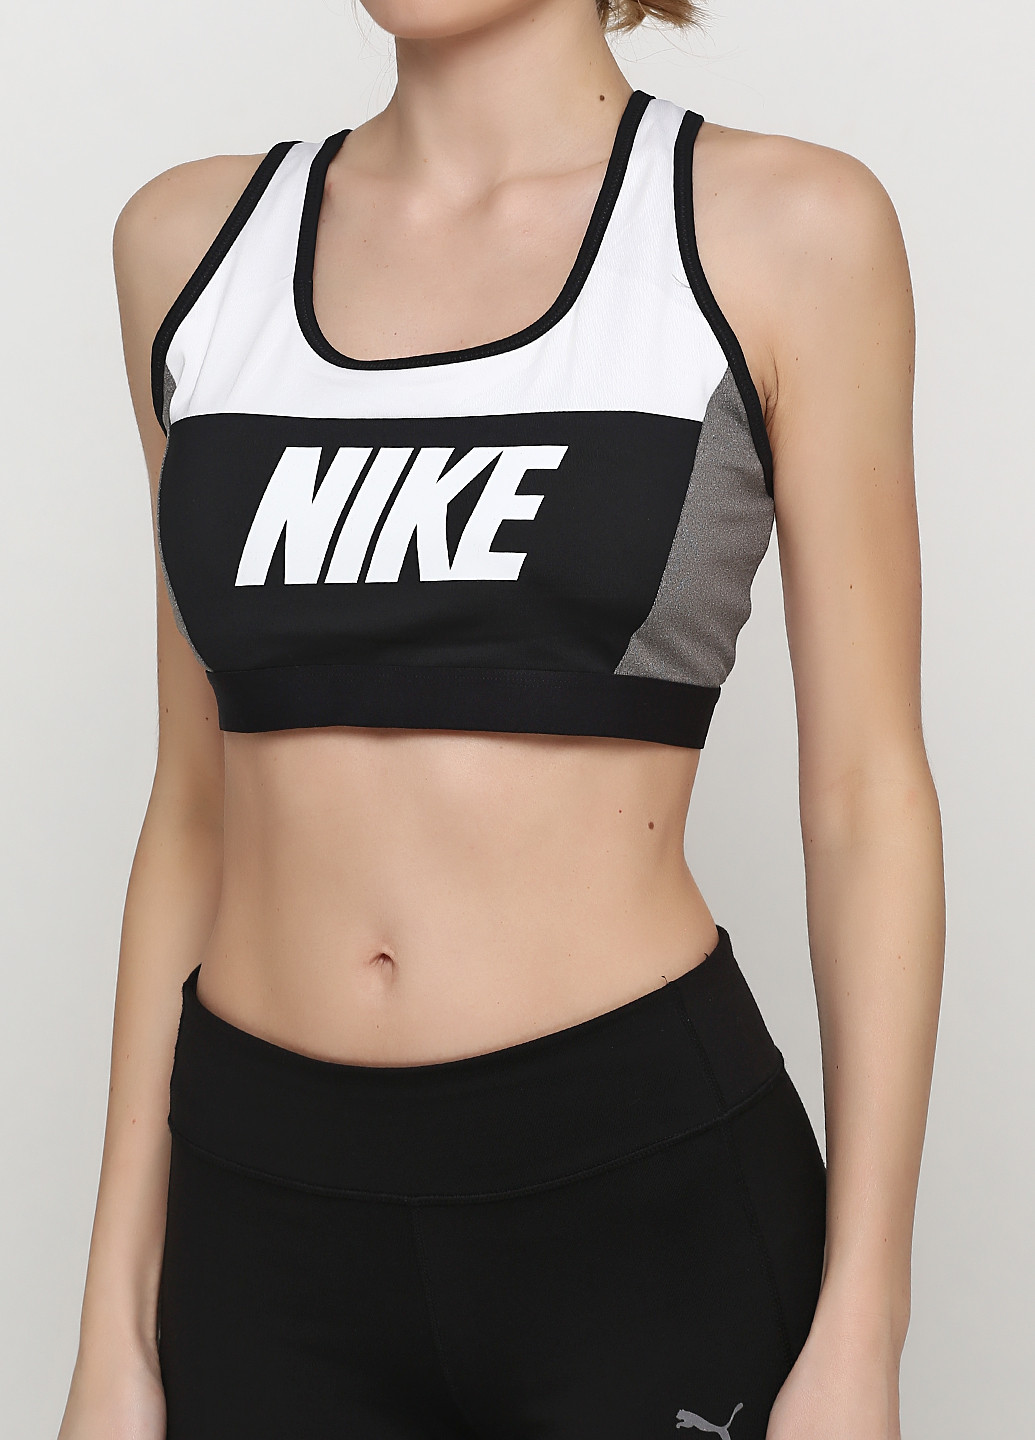 Топ Nike логотипи чорно-білі спортивні трикотаж